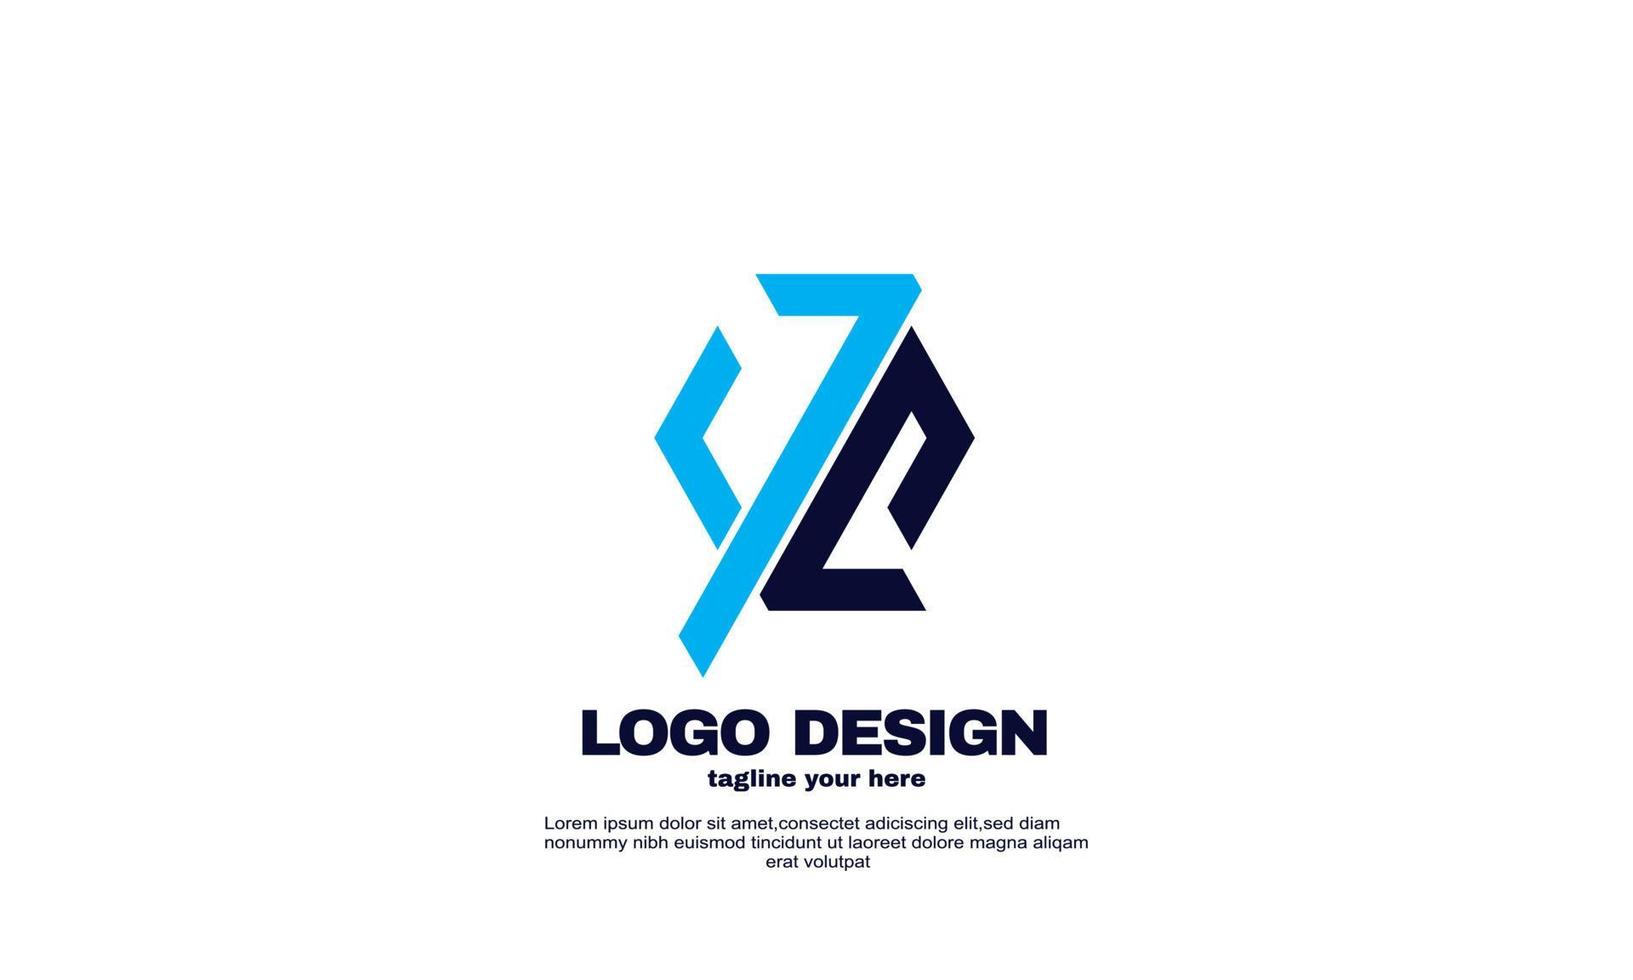 abstrata melhor ideia design de logotipo de negócios simples da empresa vetor cor azul marinho